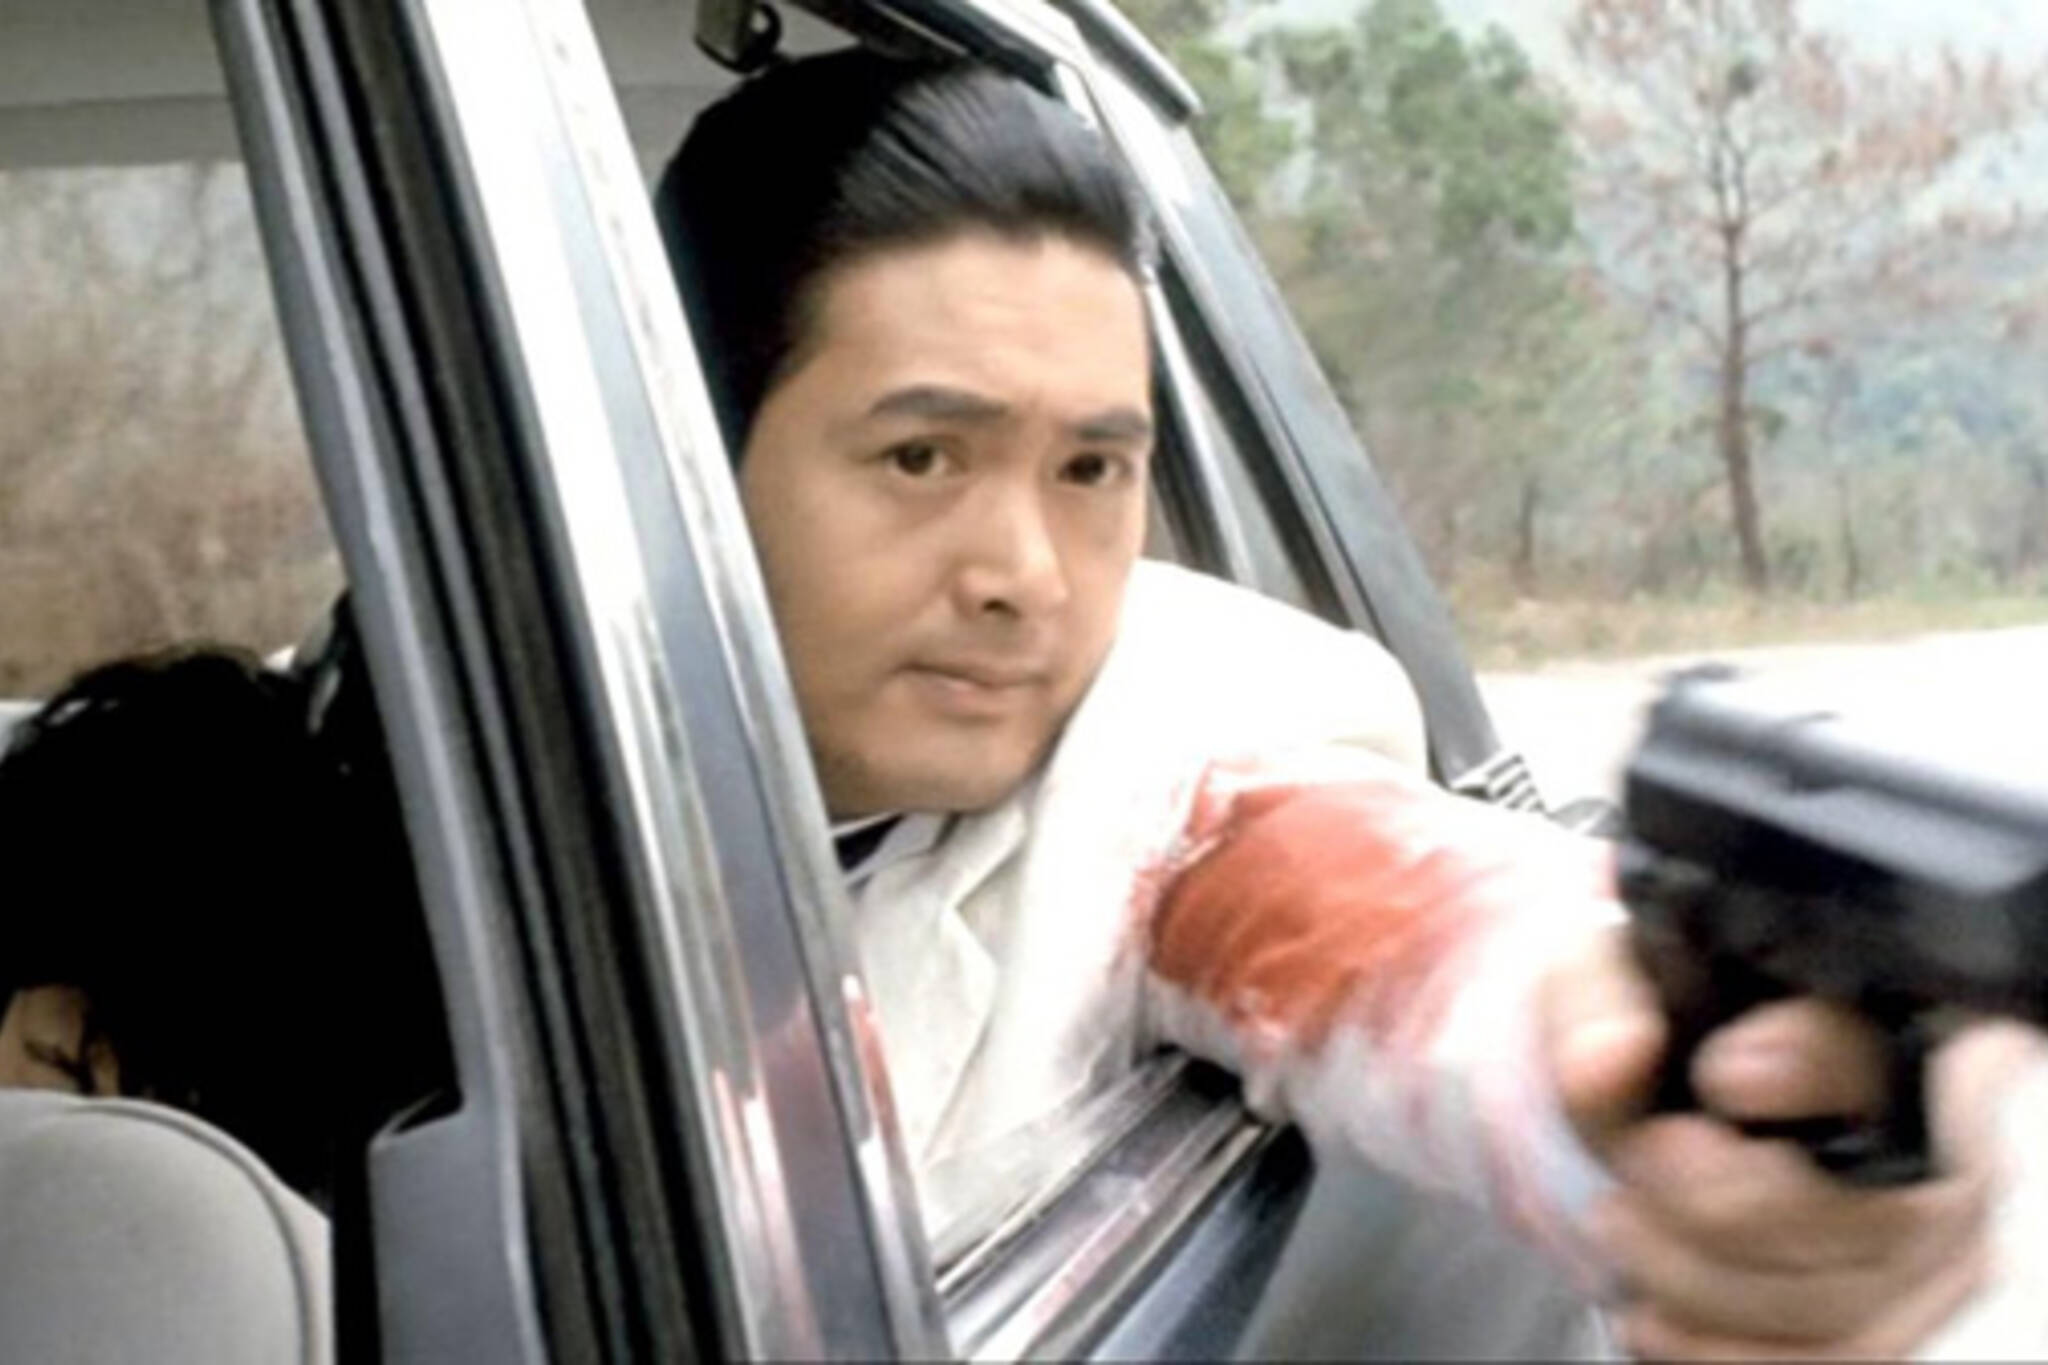 John Woo's The Killer